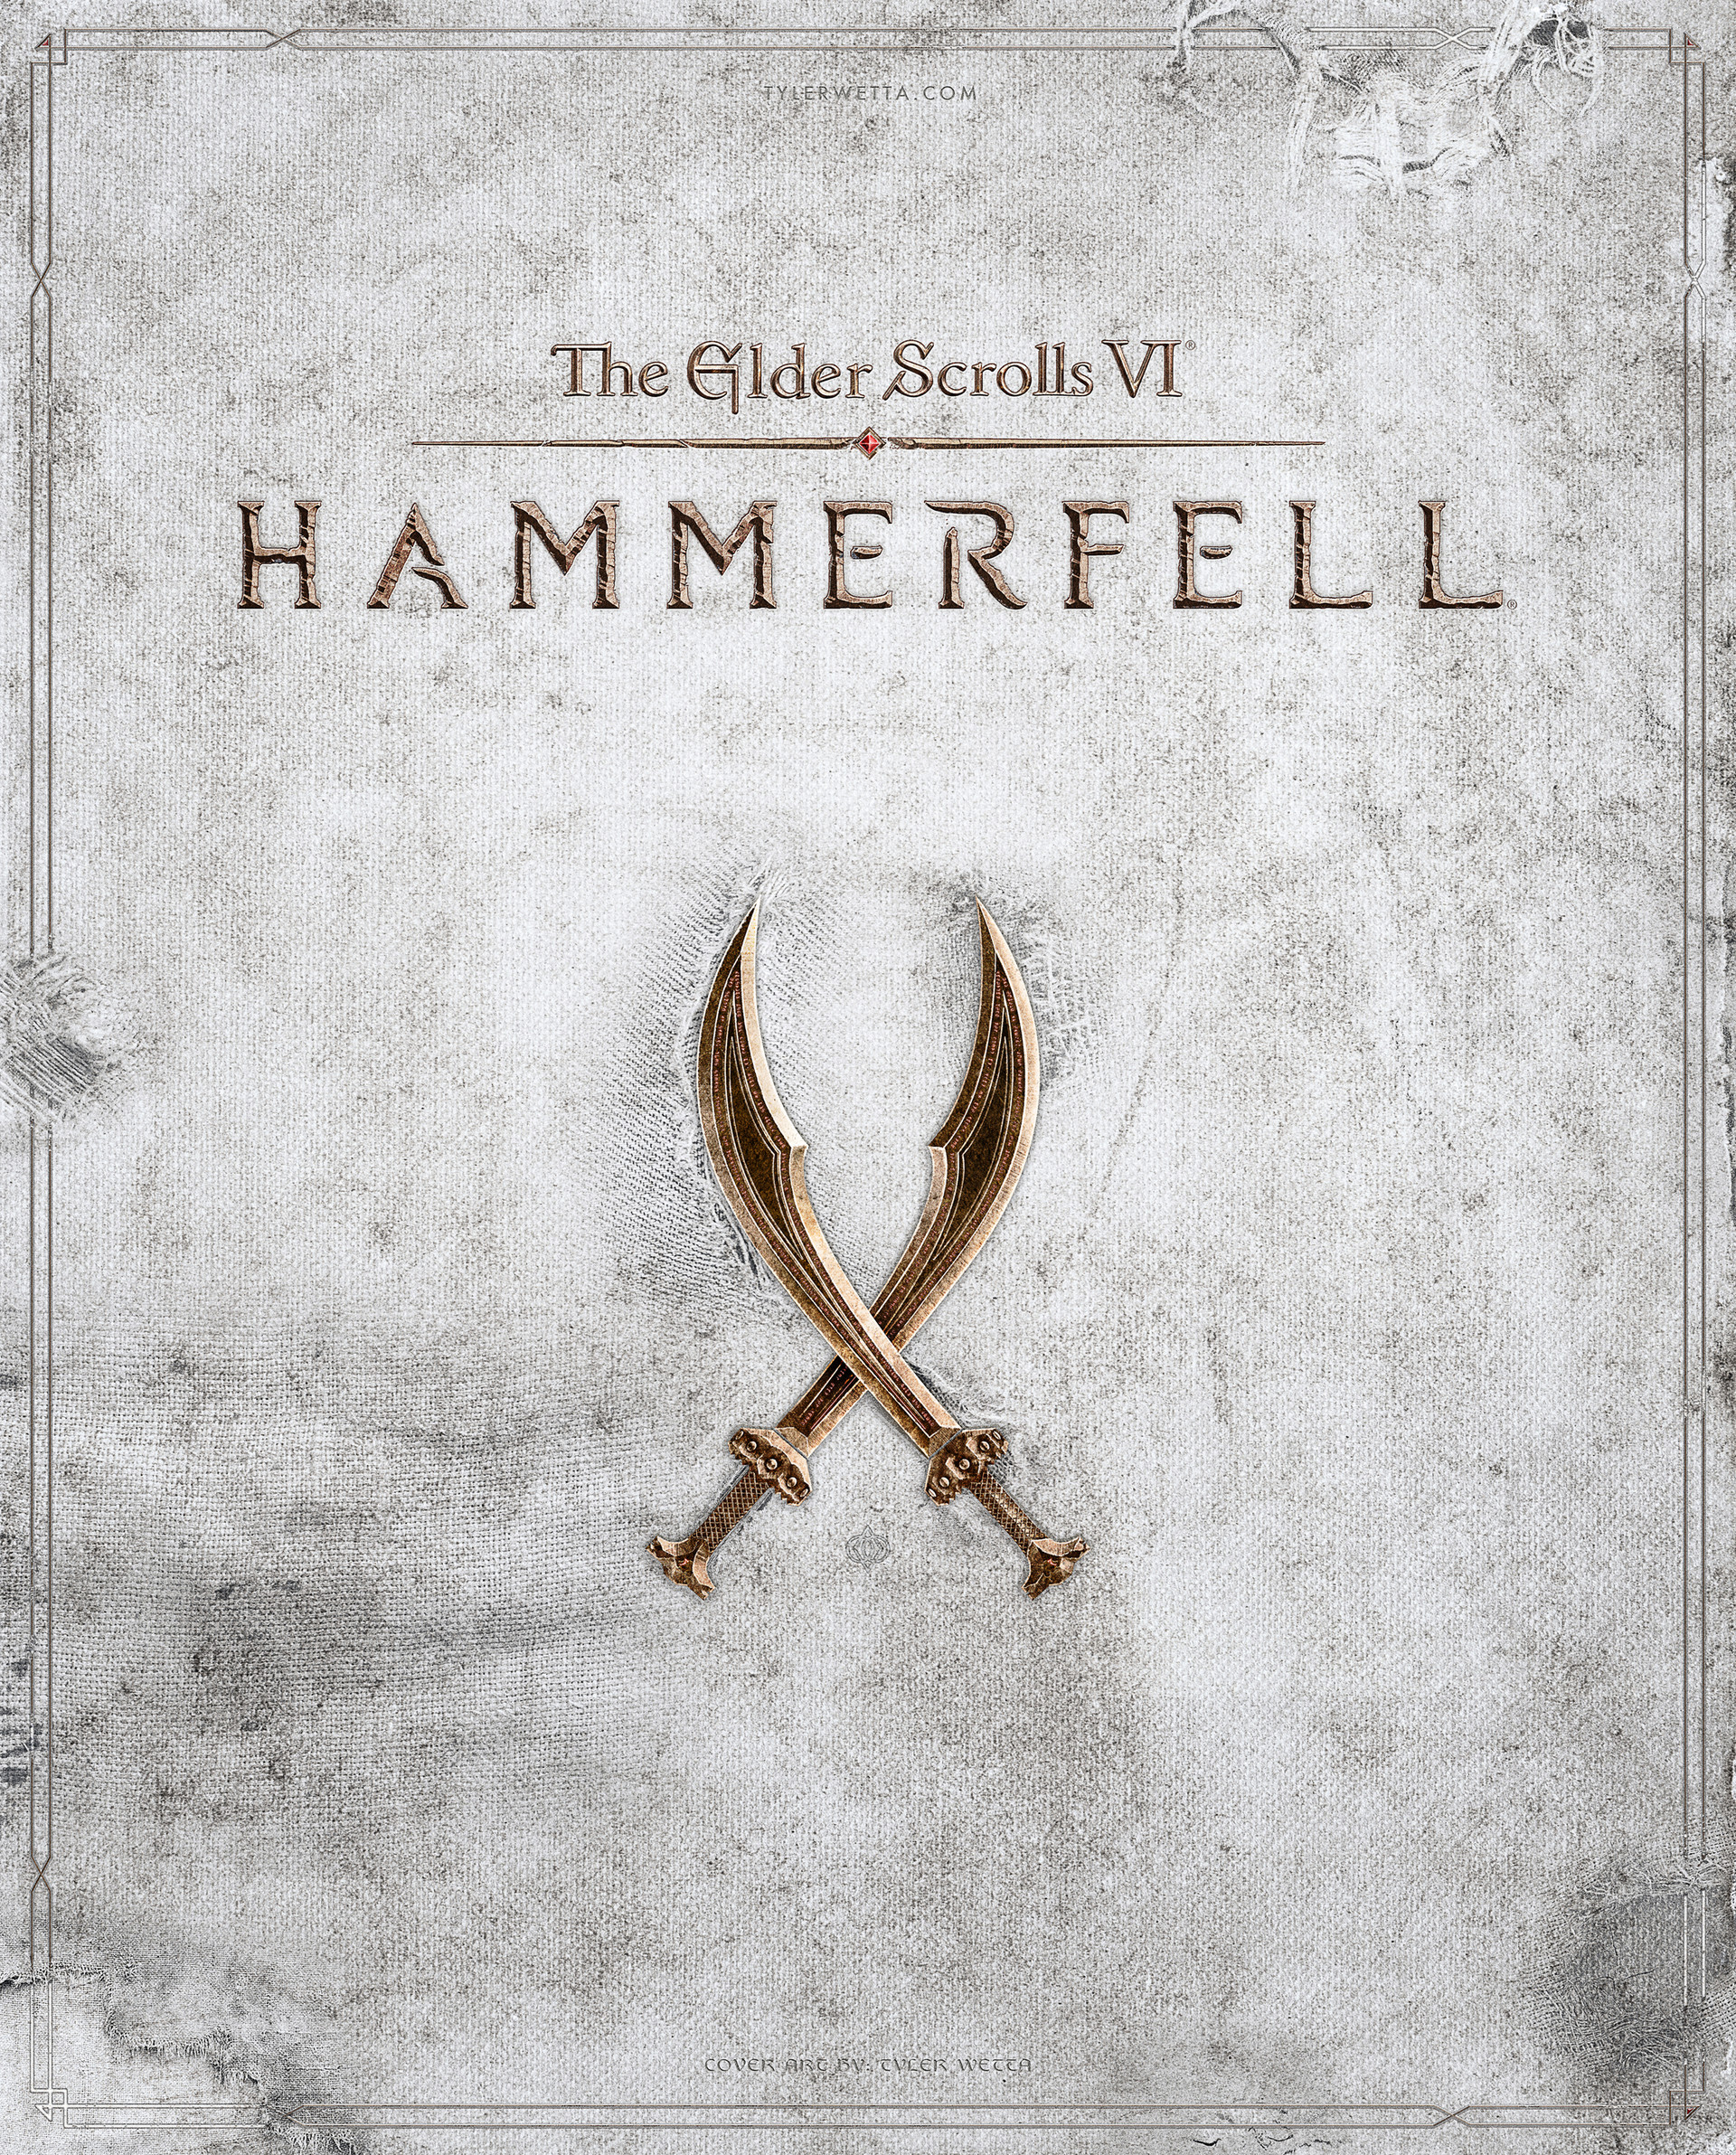 Системные требования The Elder Scrolls 6 (TES 6), проверка ПК, минимальные  и рекомендуемые требования игры